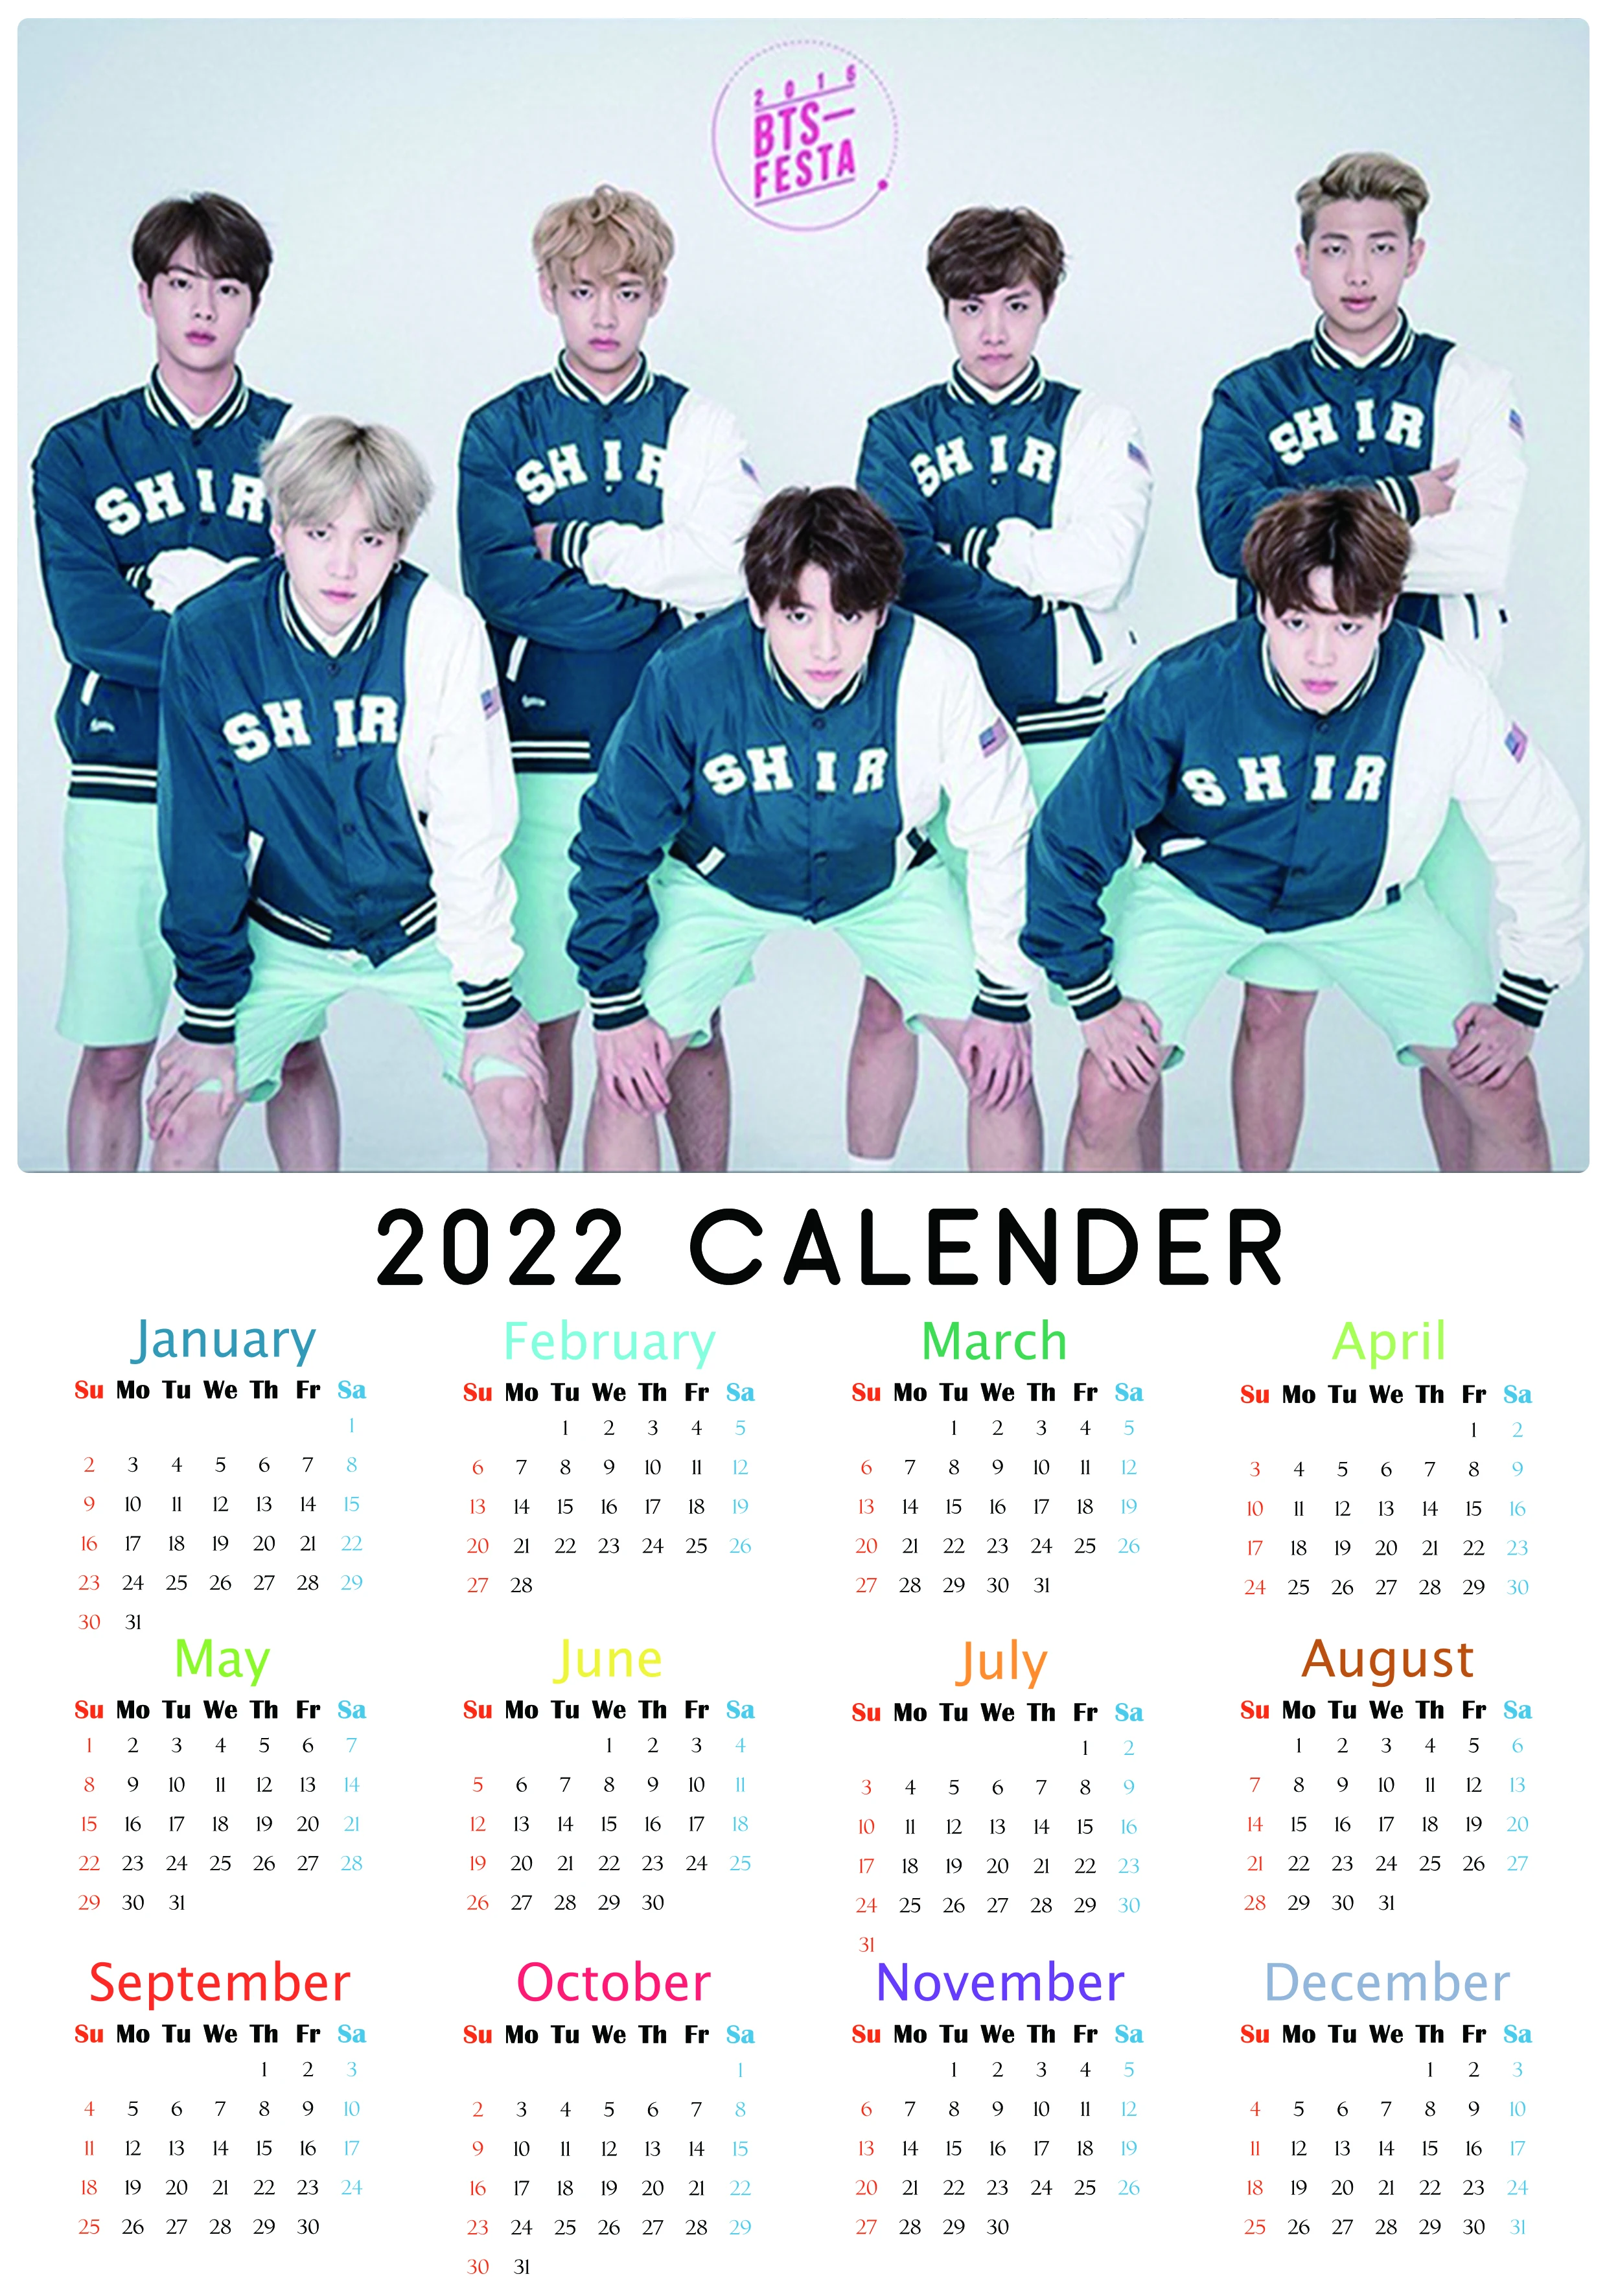 Kpop Schedule 2022 Best Bts K-Pop Calendar 2022 [19 Styles] | Kpopdeal.com